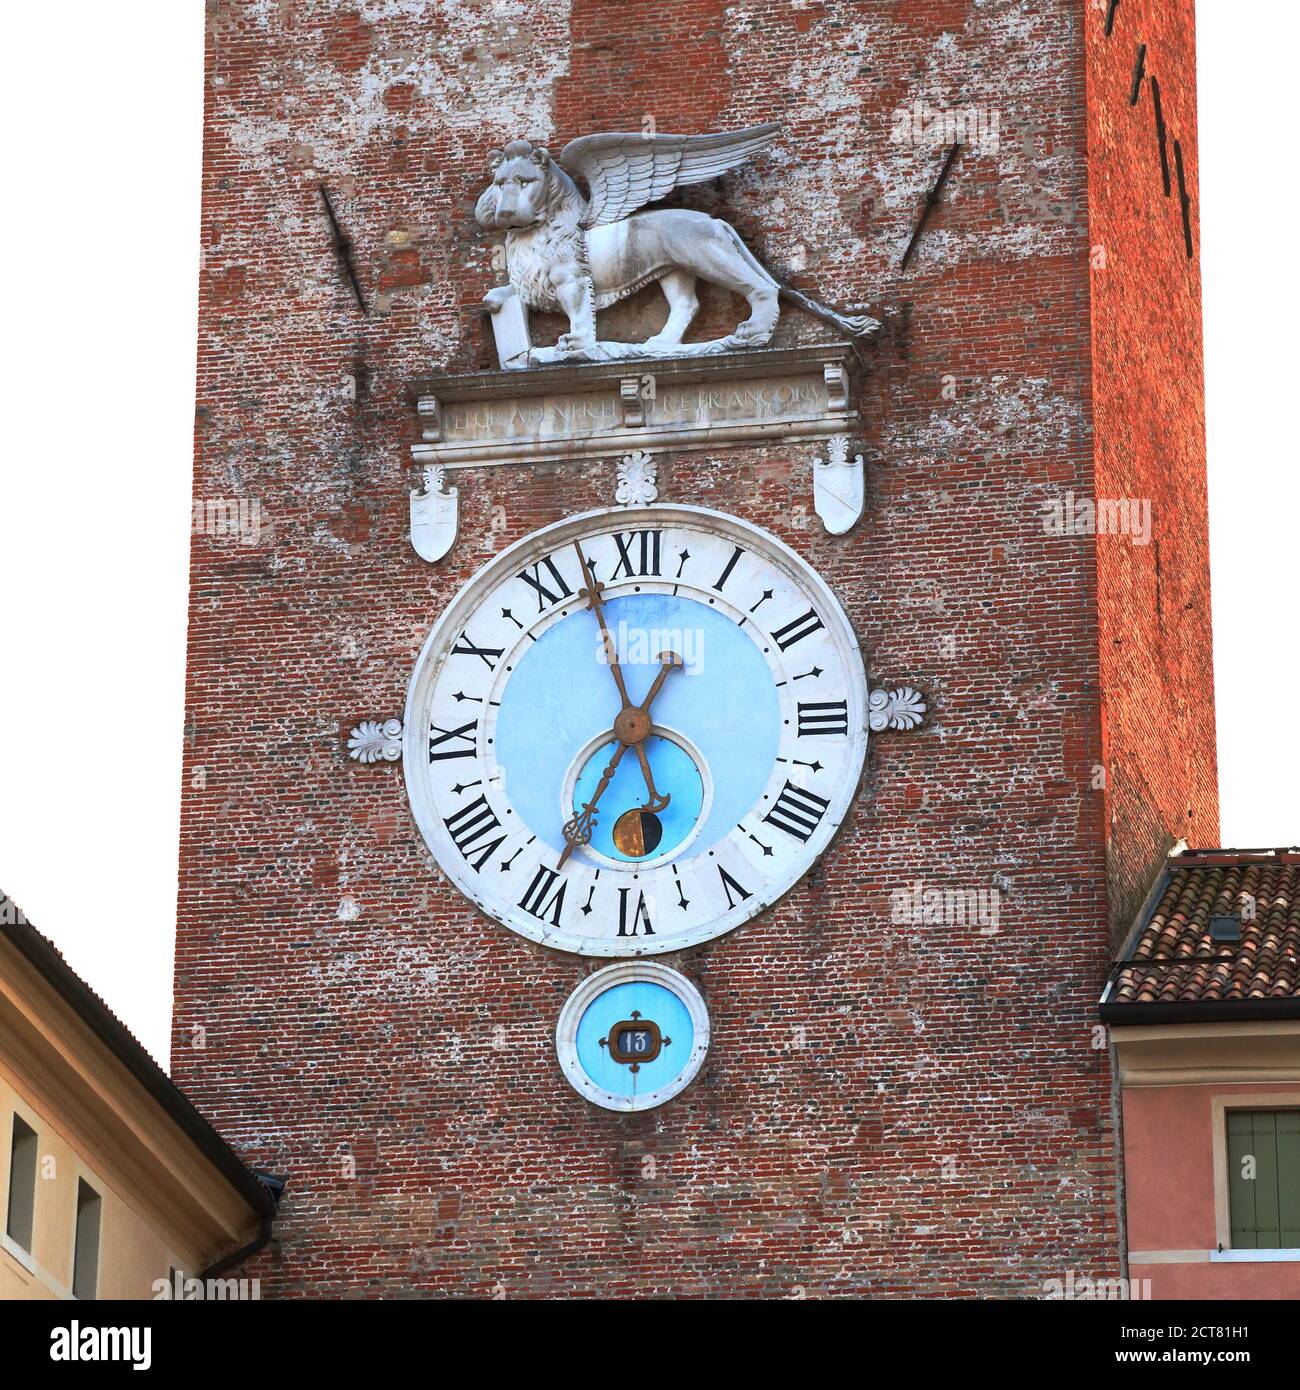 Leone di Venezia alla torre dell'orologio, la torre est, Castelfranco Veneto Foto Stock